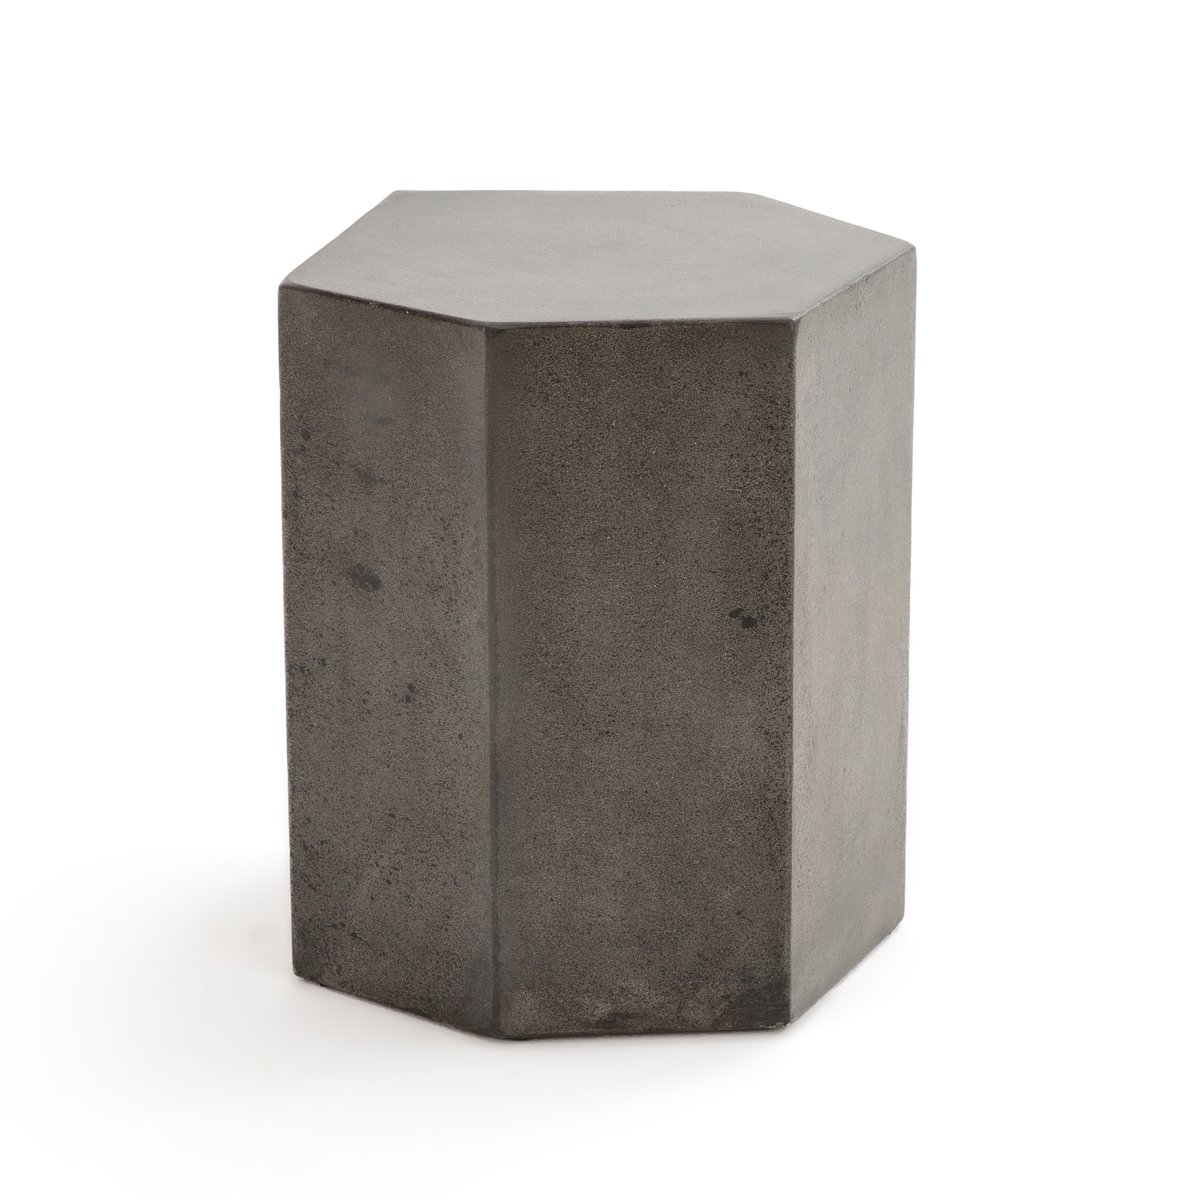 Столик La Redoute Журнальный из цементного волокна CONCRITE единый размер серый